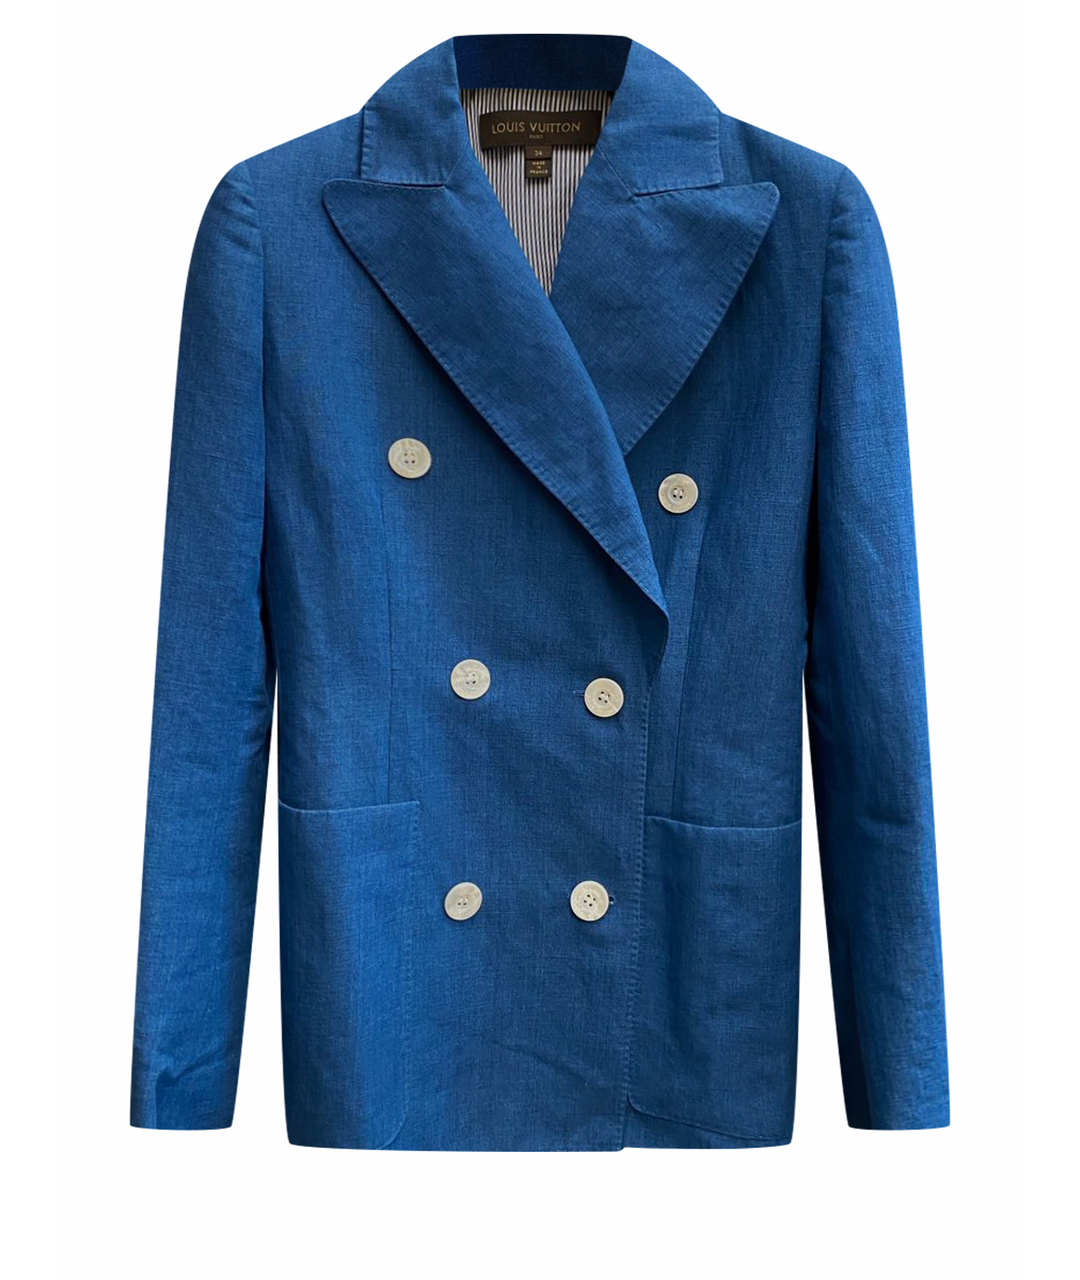 LOUIS VUITTON Голубой льняной жакет/пиджак, фото 1